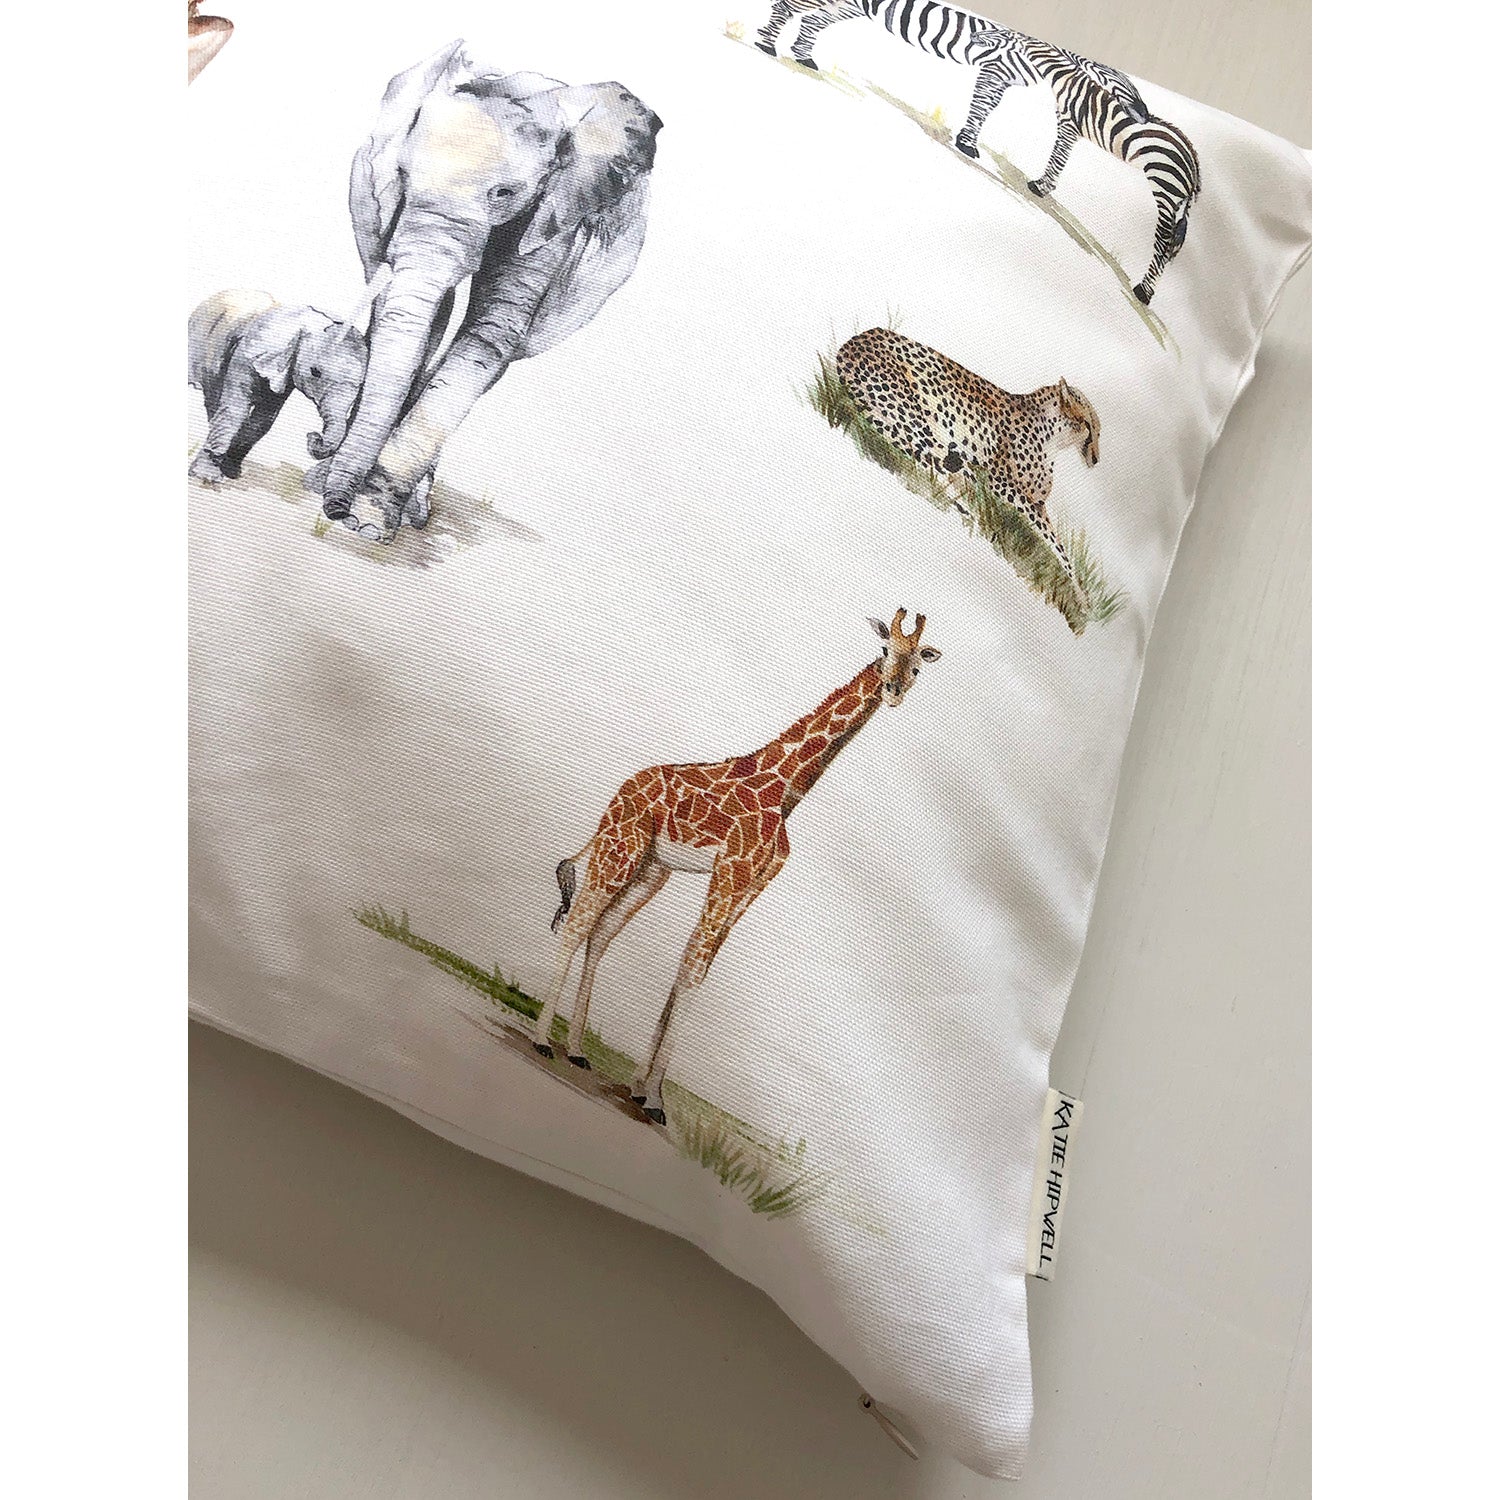 Safari Ivory Cushion